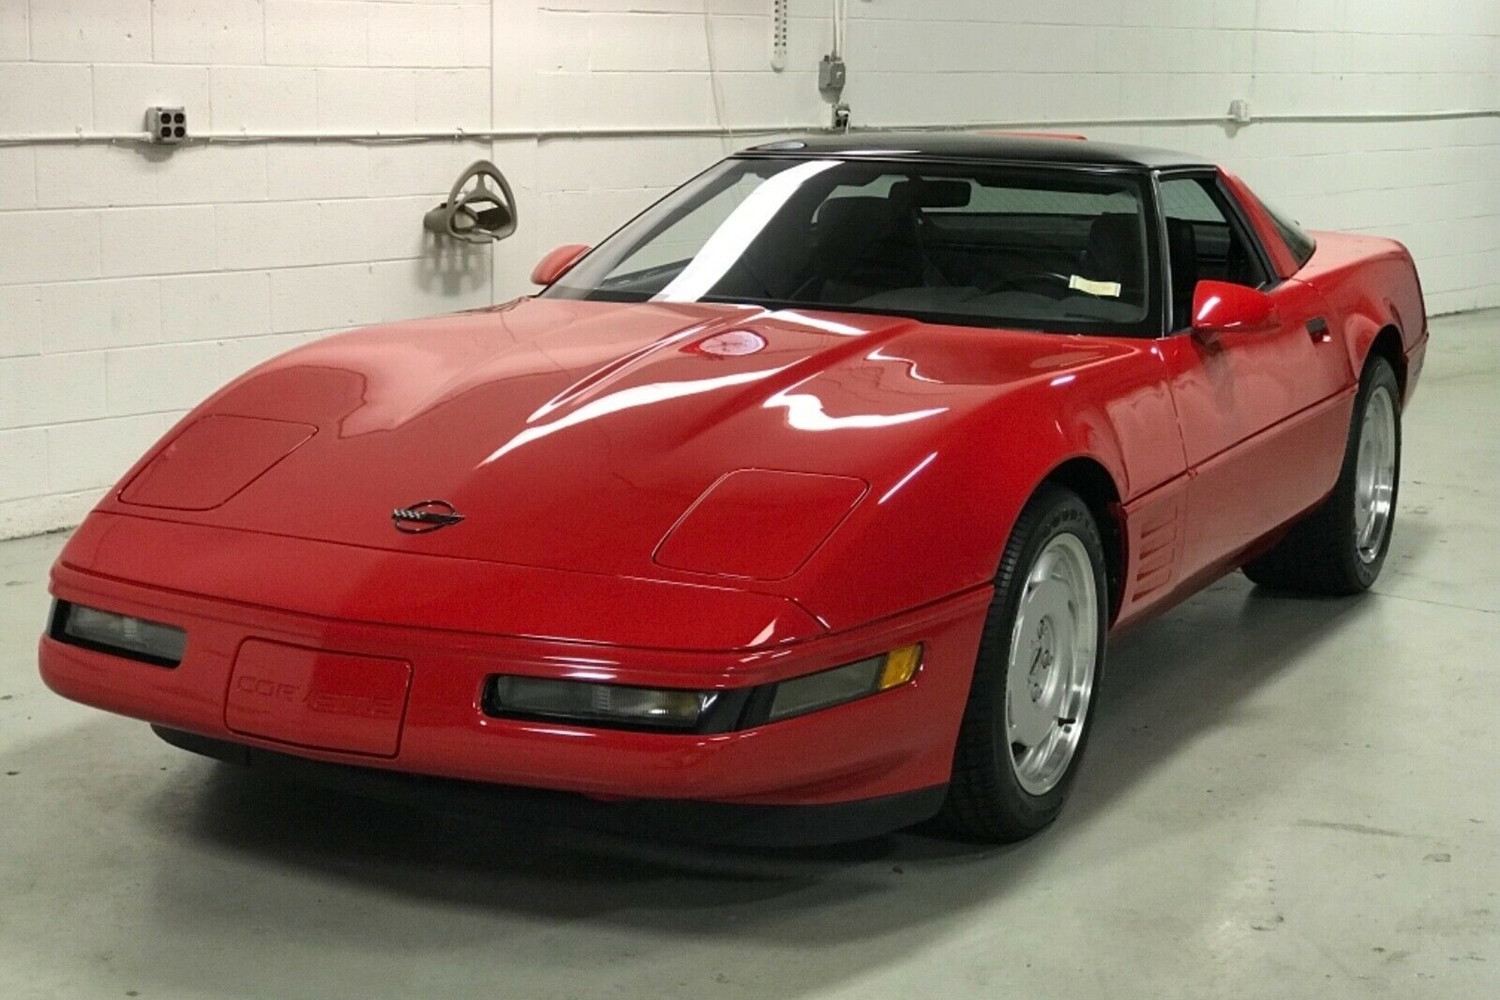 30 évig várt az első tulajdonosra ez a piros Corvette 6